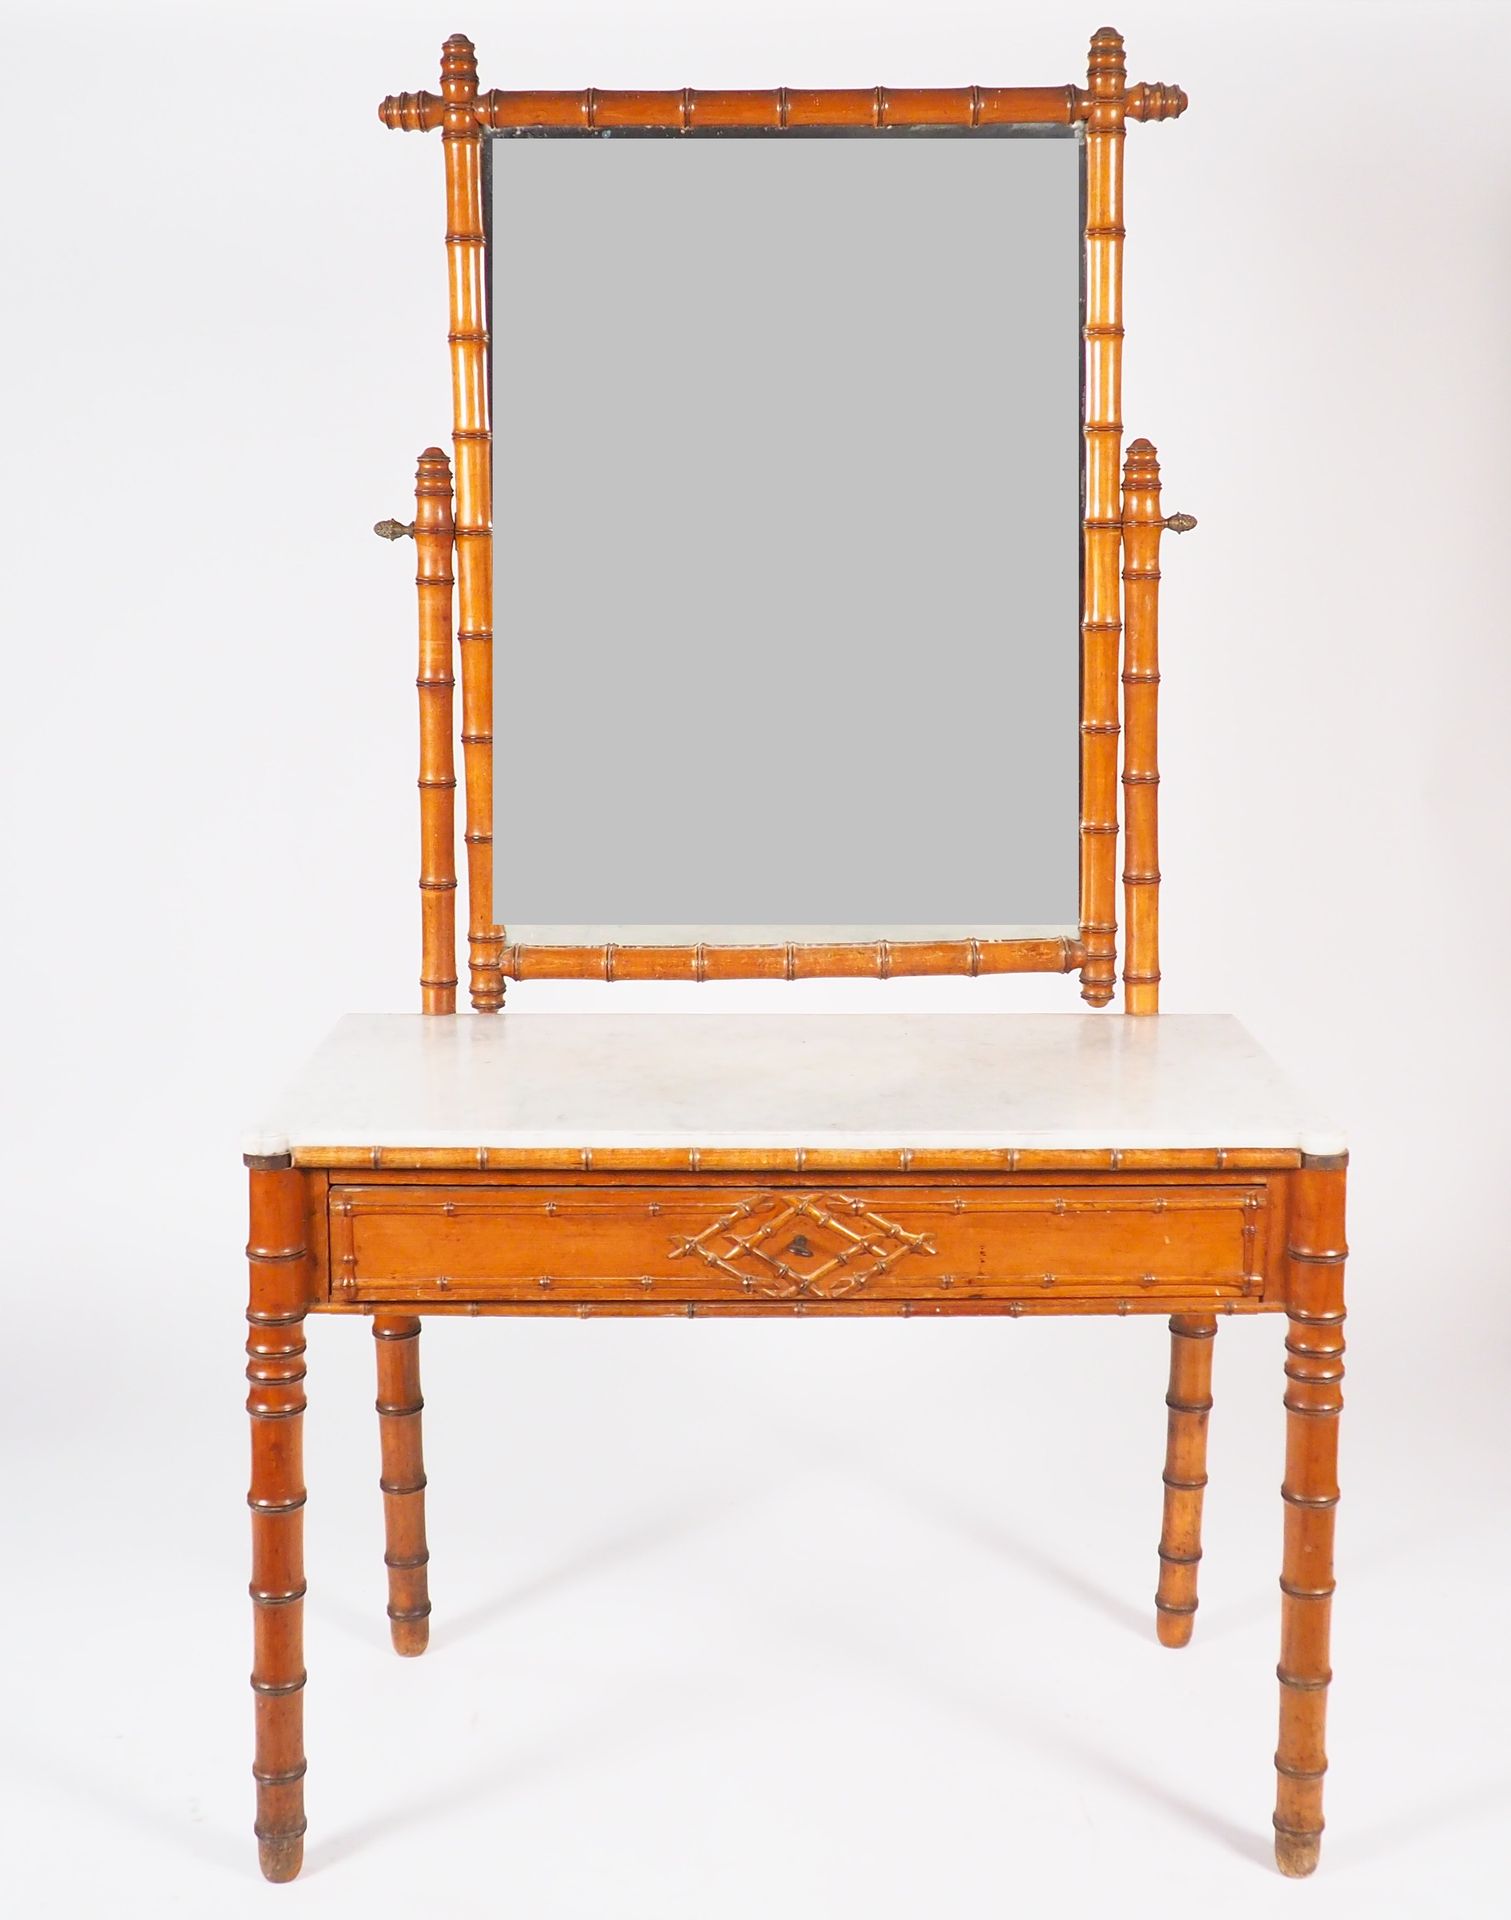 Null 拿破仑三世的梳妆台，有竹子的装饰，在腰带上开了一个抽屉，白色大理石桌面。
尺寸为182 x 103 x 53厘米。